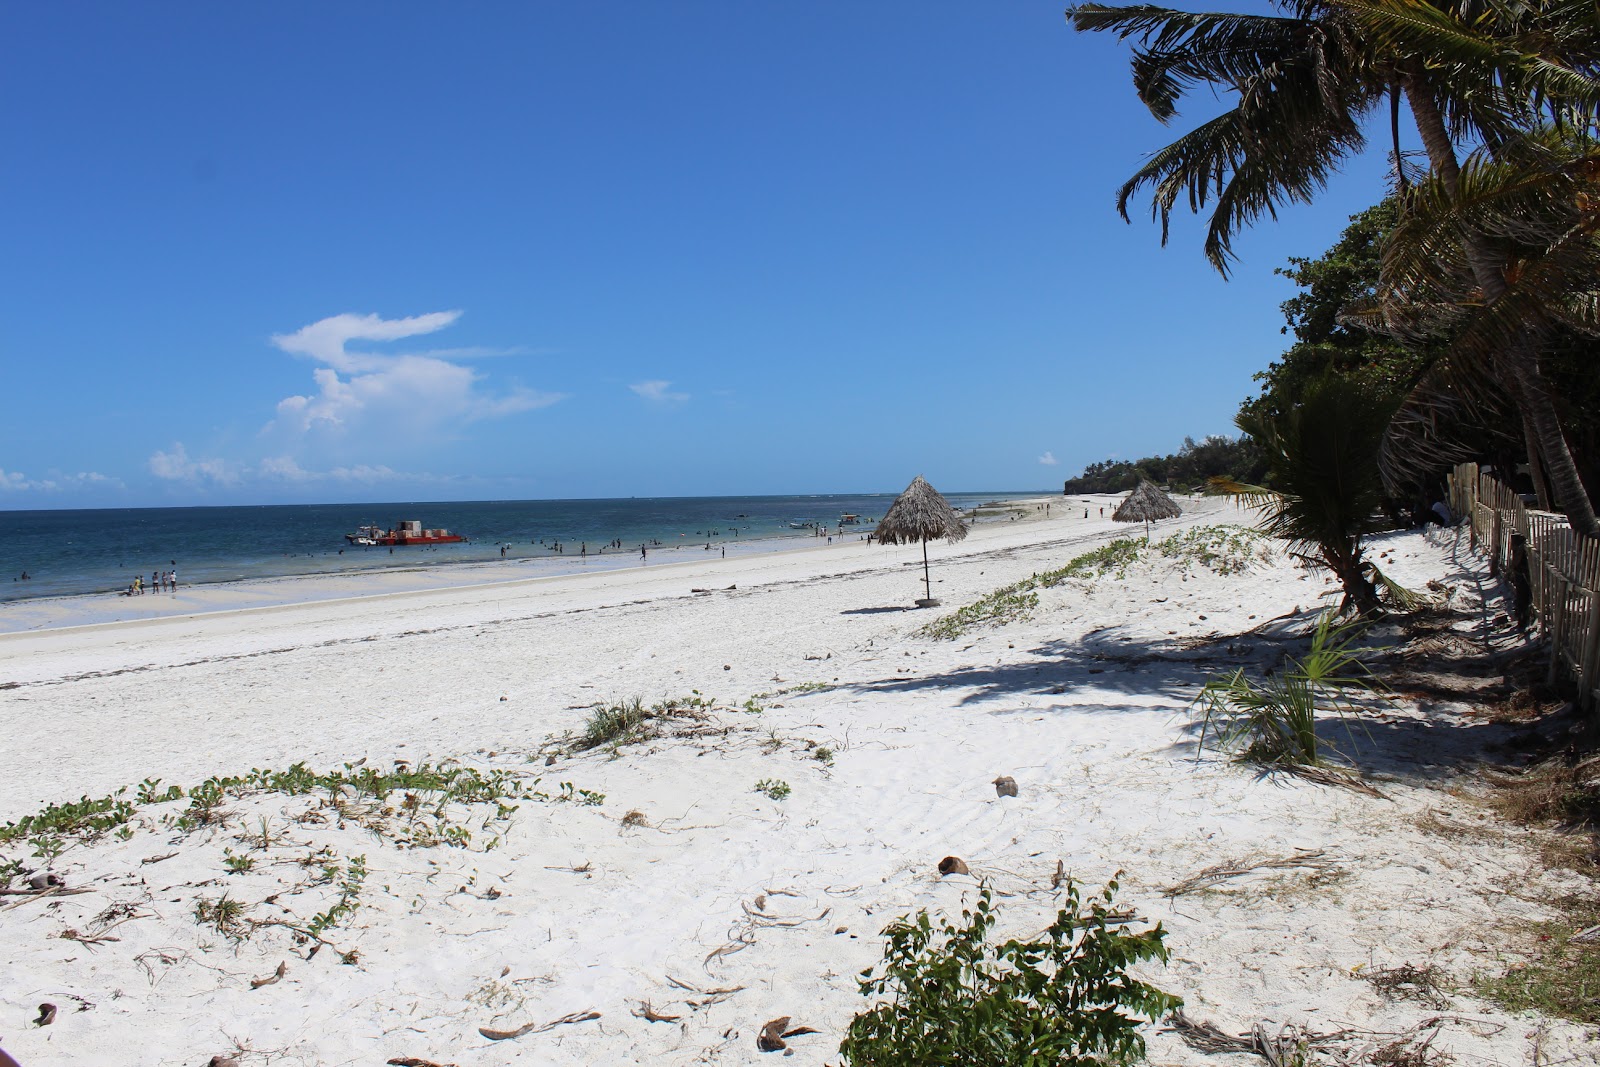 Fotografie cu Plaja Nyali (Mombasa) cu o suprafață de nisip strălucitor